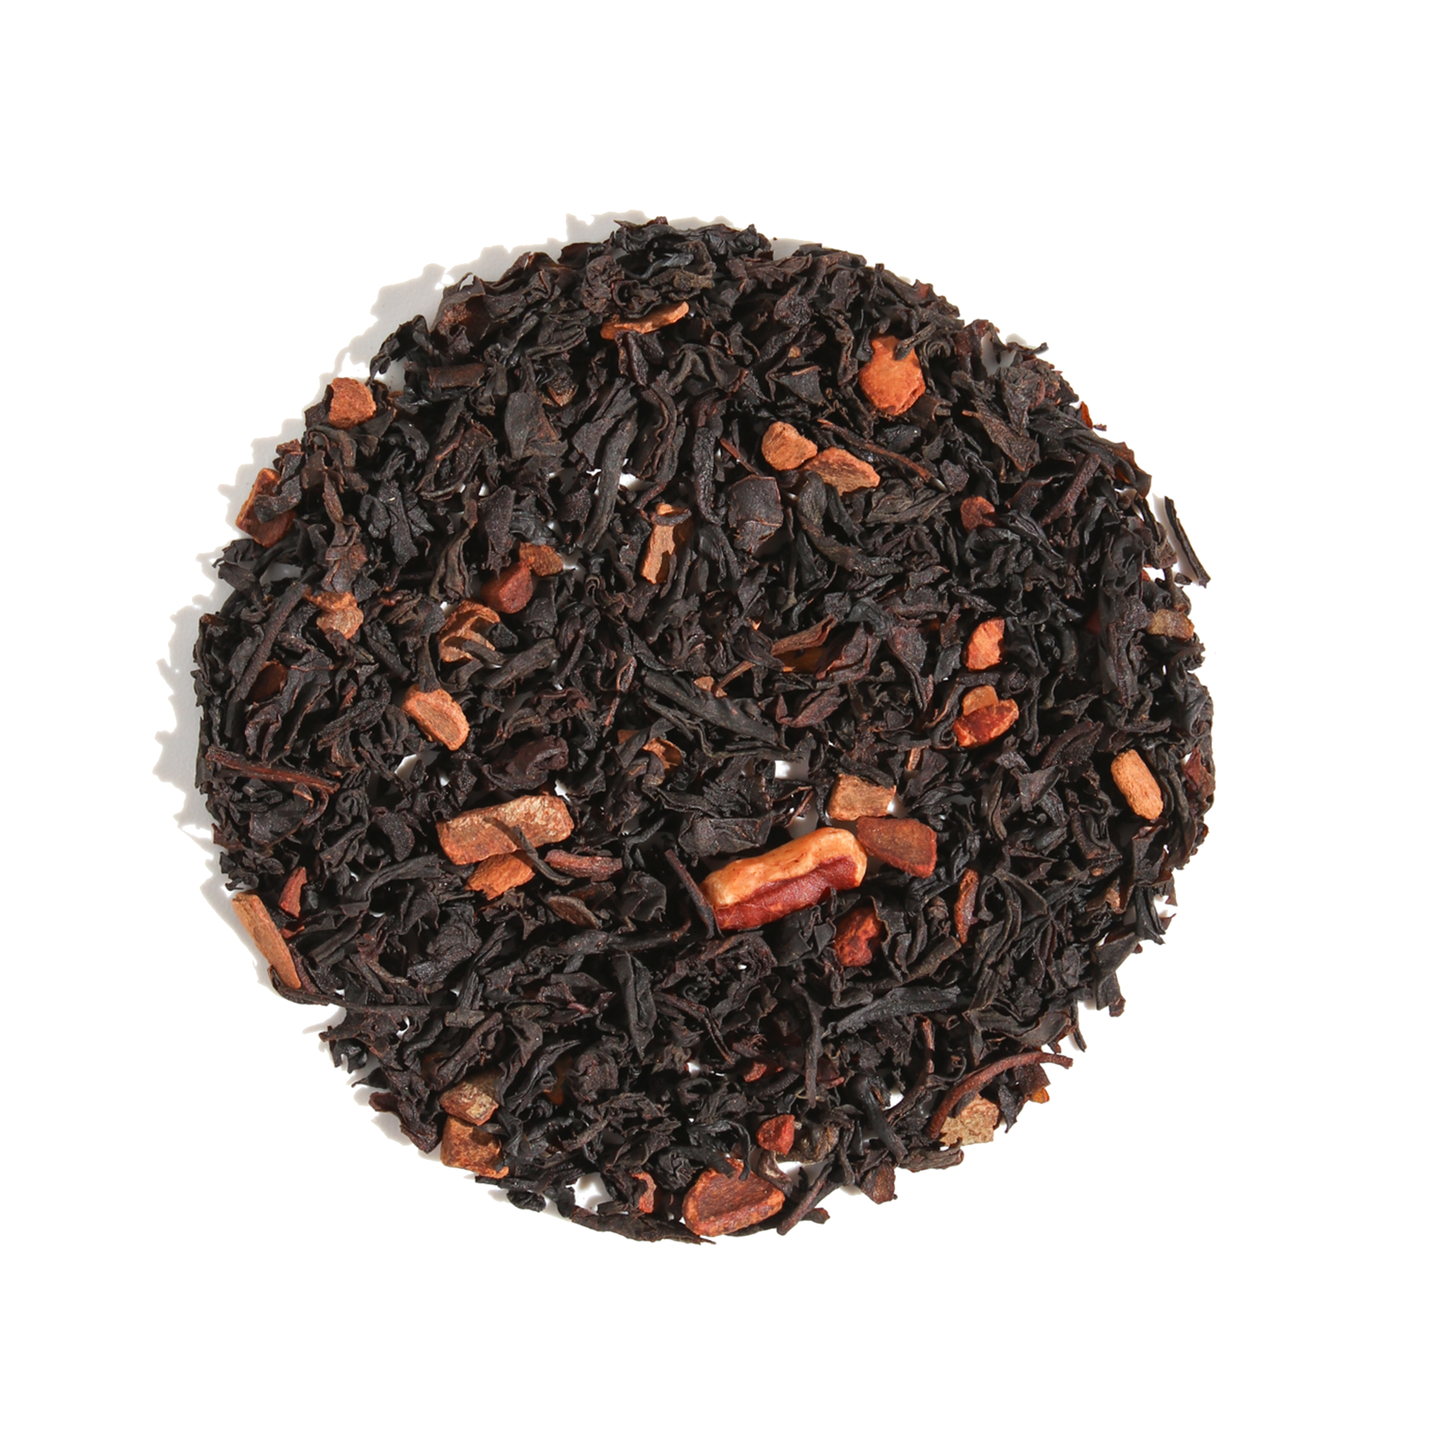 Mardi Gras Blend Black Tea (Cinnamon-Pecan)